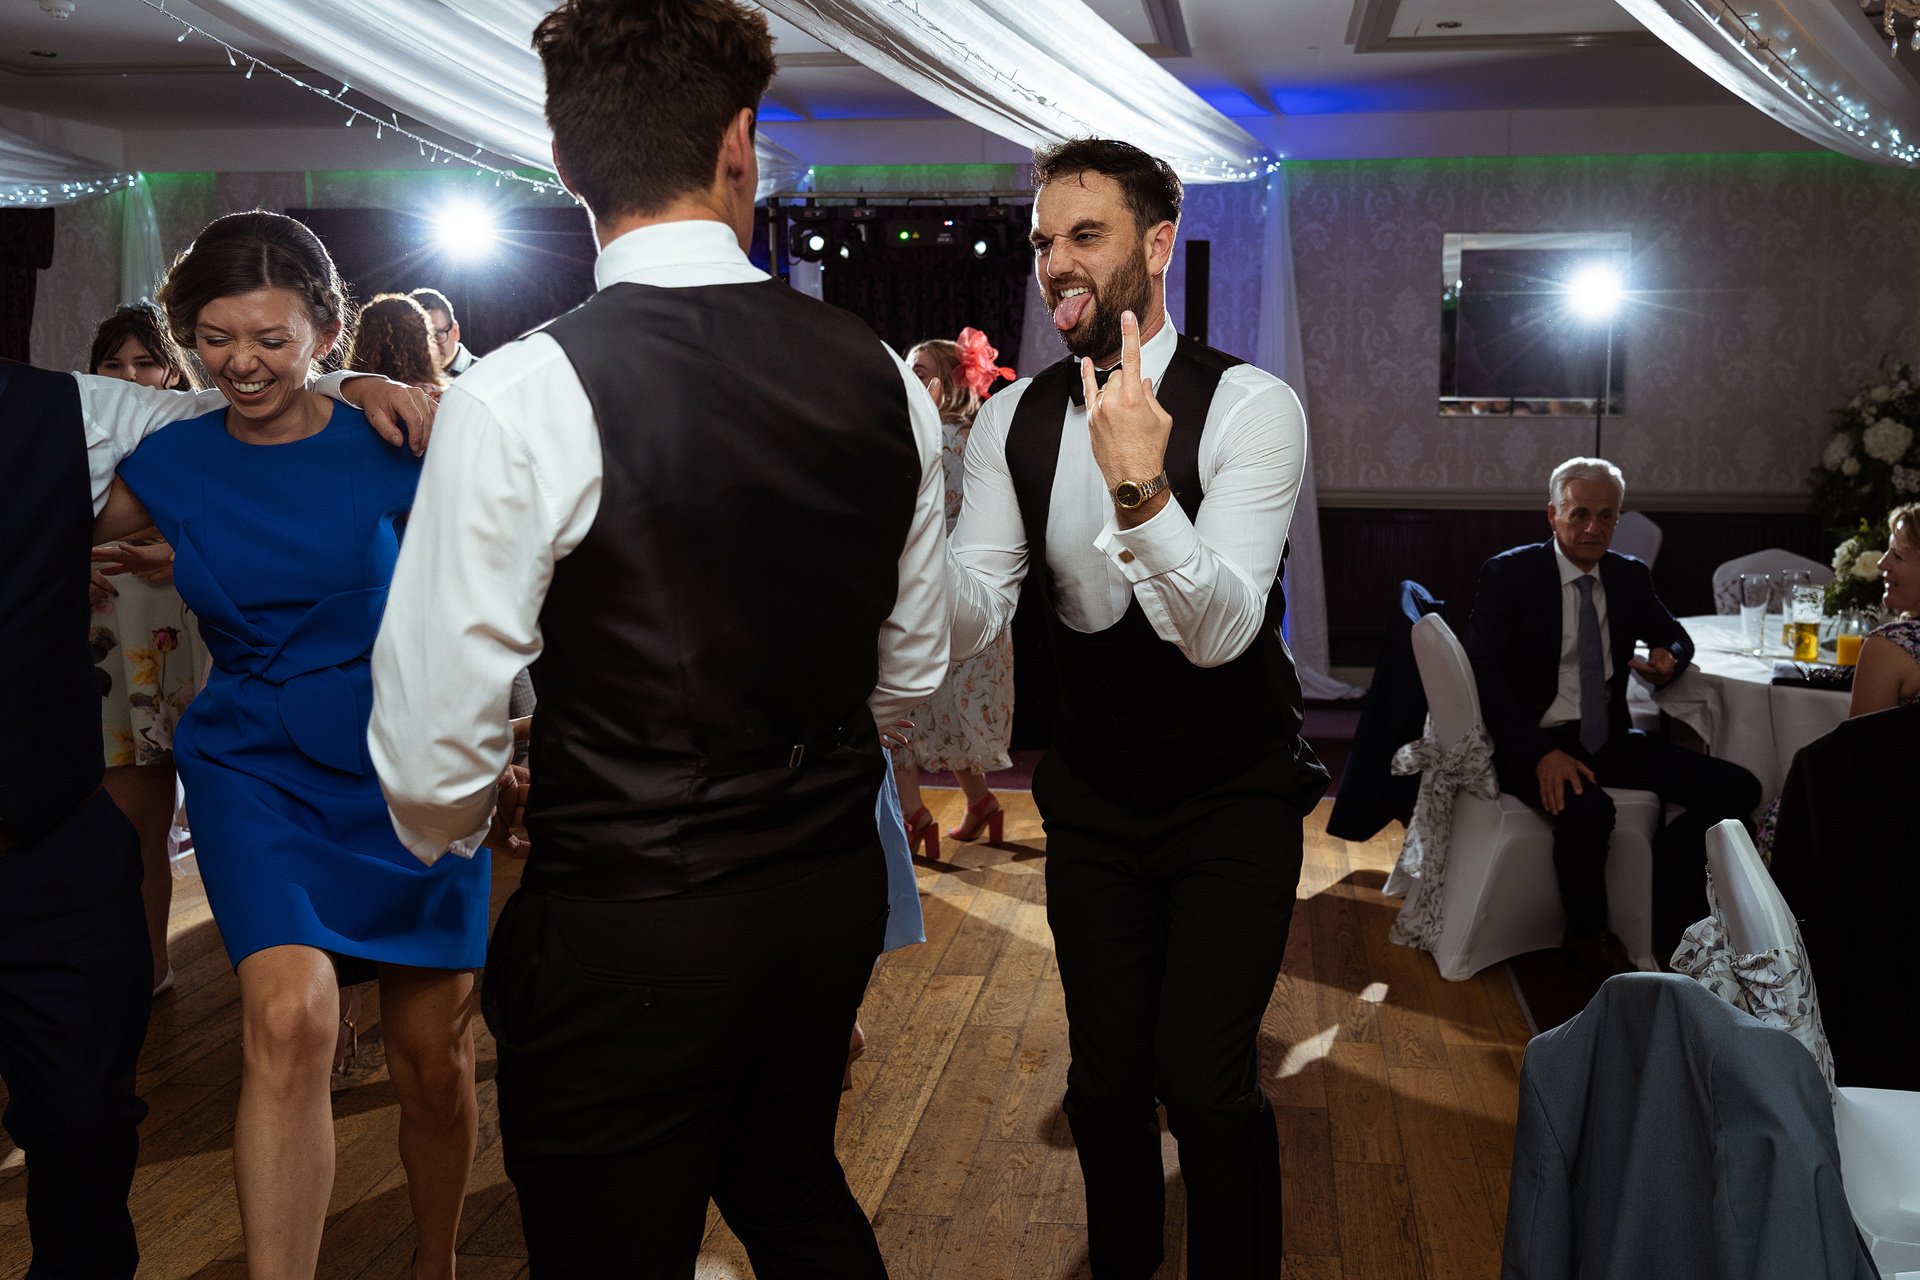 Maesmawr Hall wedding party dancing